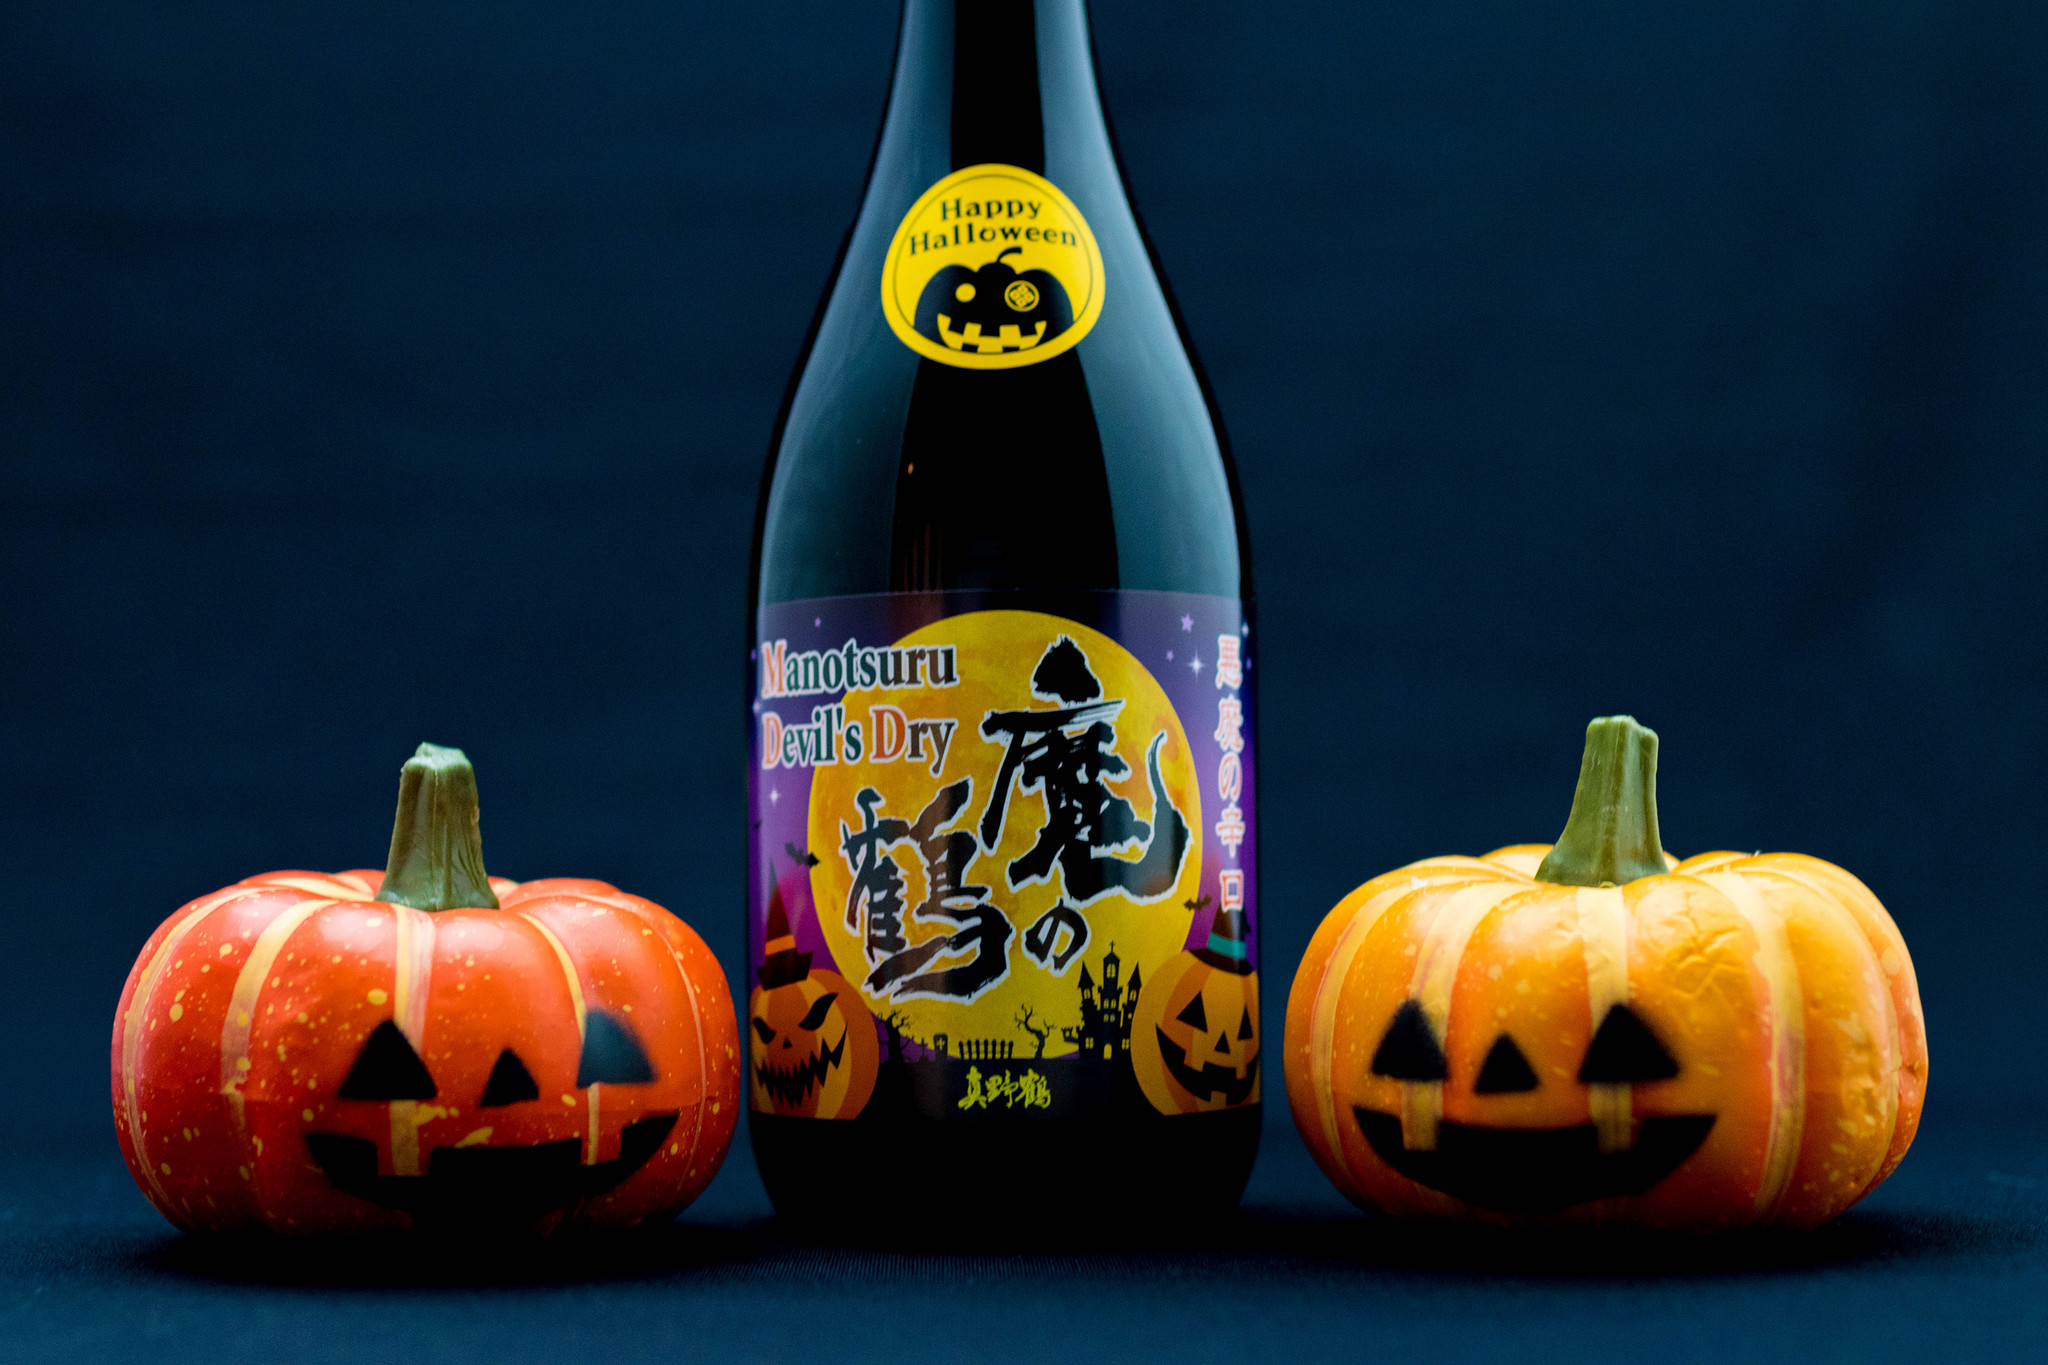 ハロウィン限定日本酒 魔除け の 魔の鶴 でhappy Halloween 尾畑酒造株式会社のプレスリリース